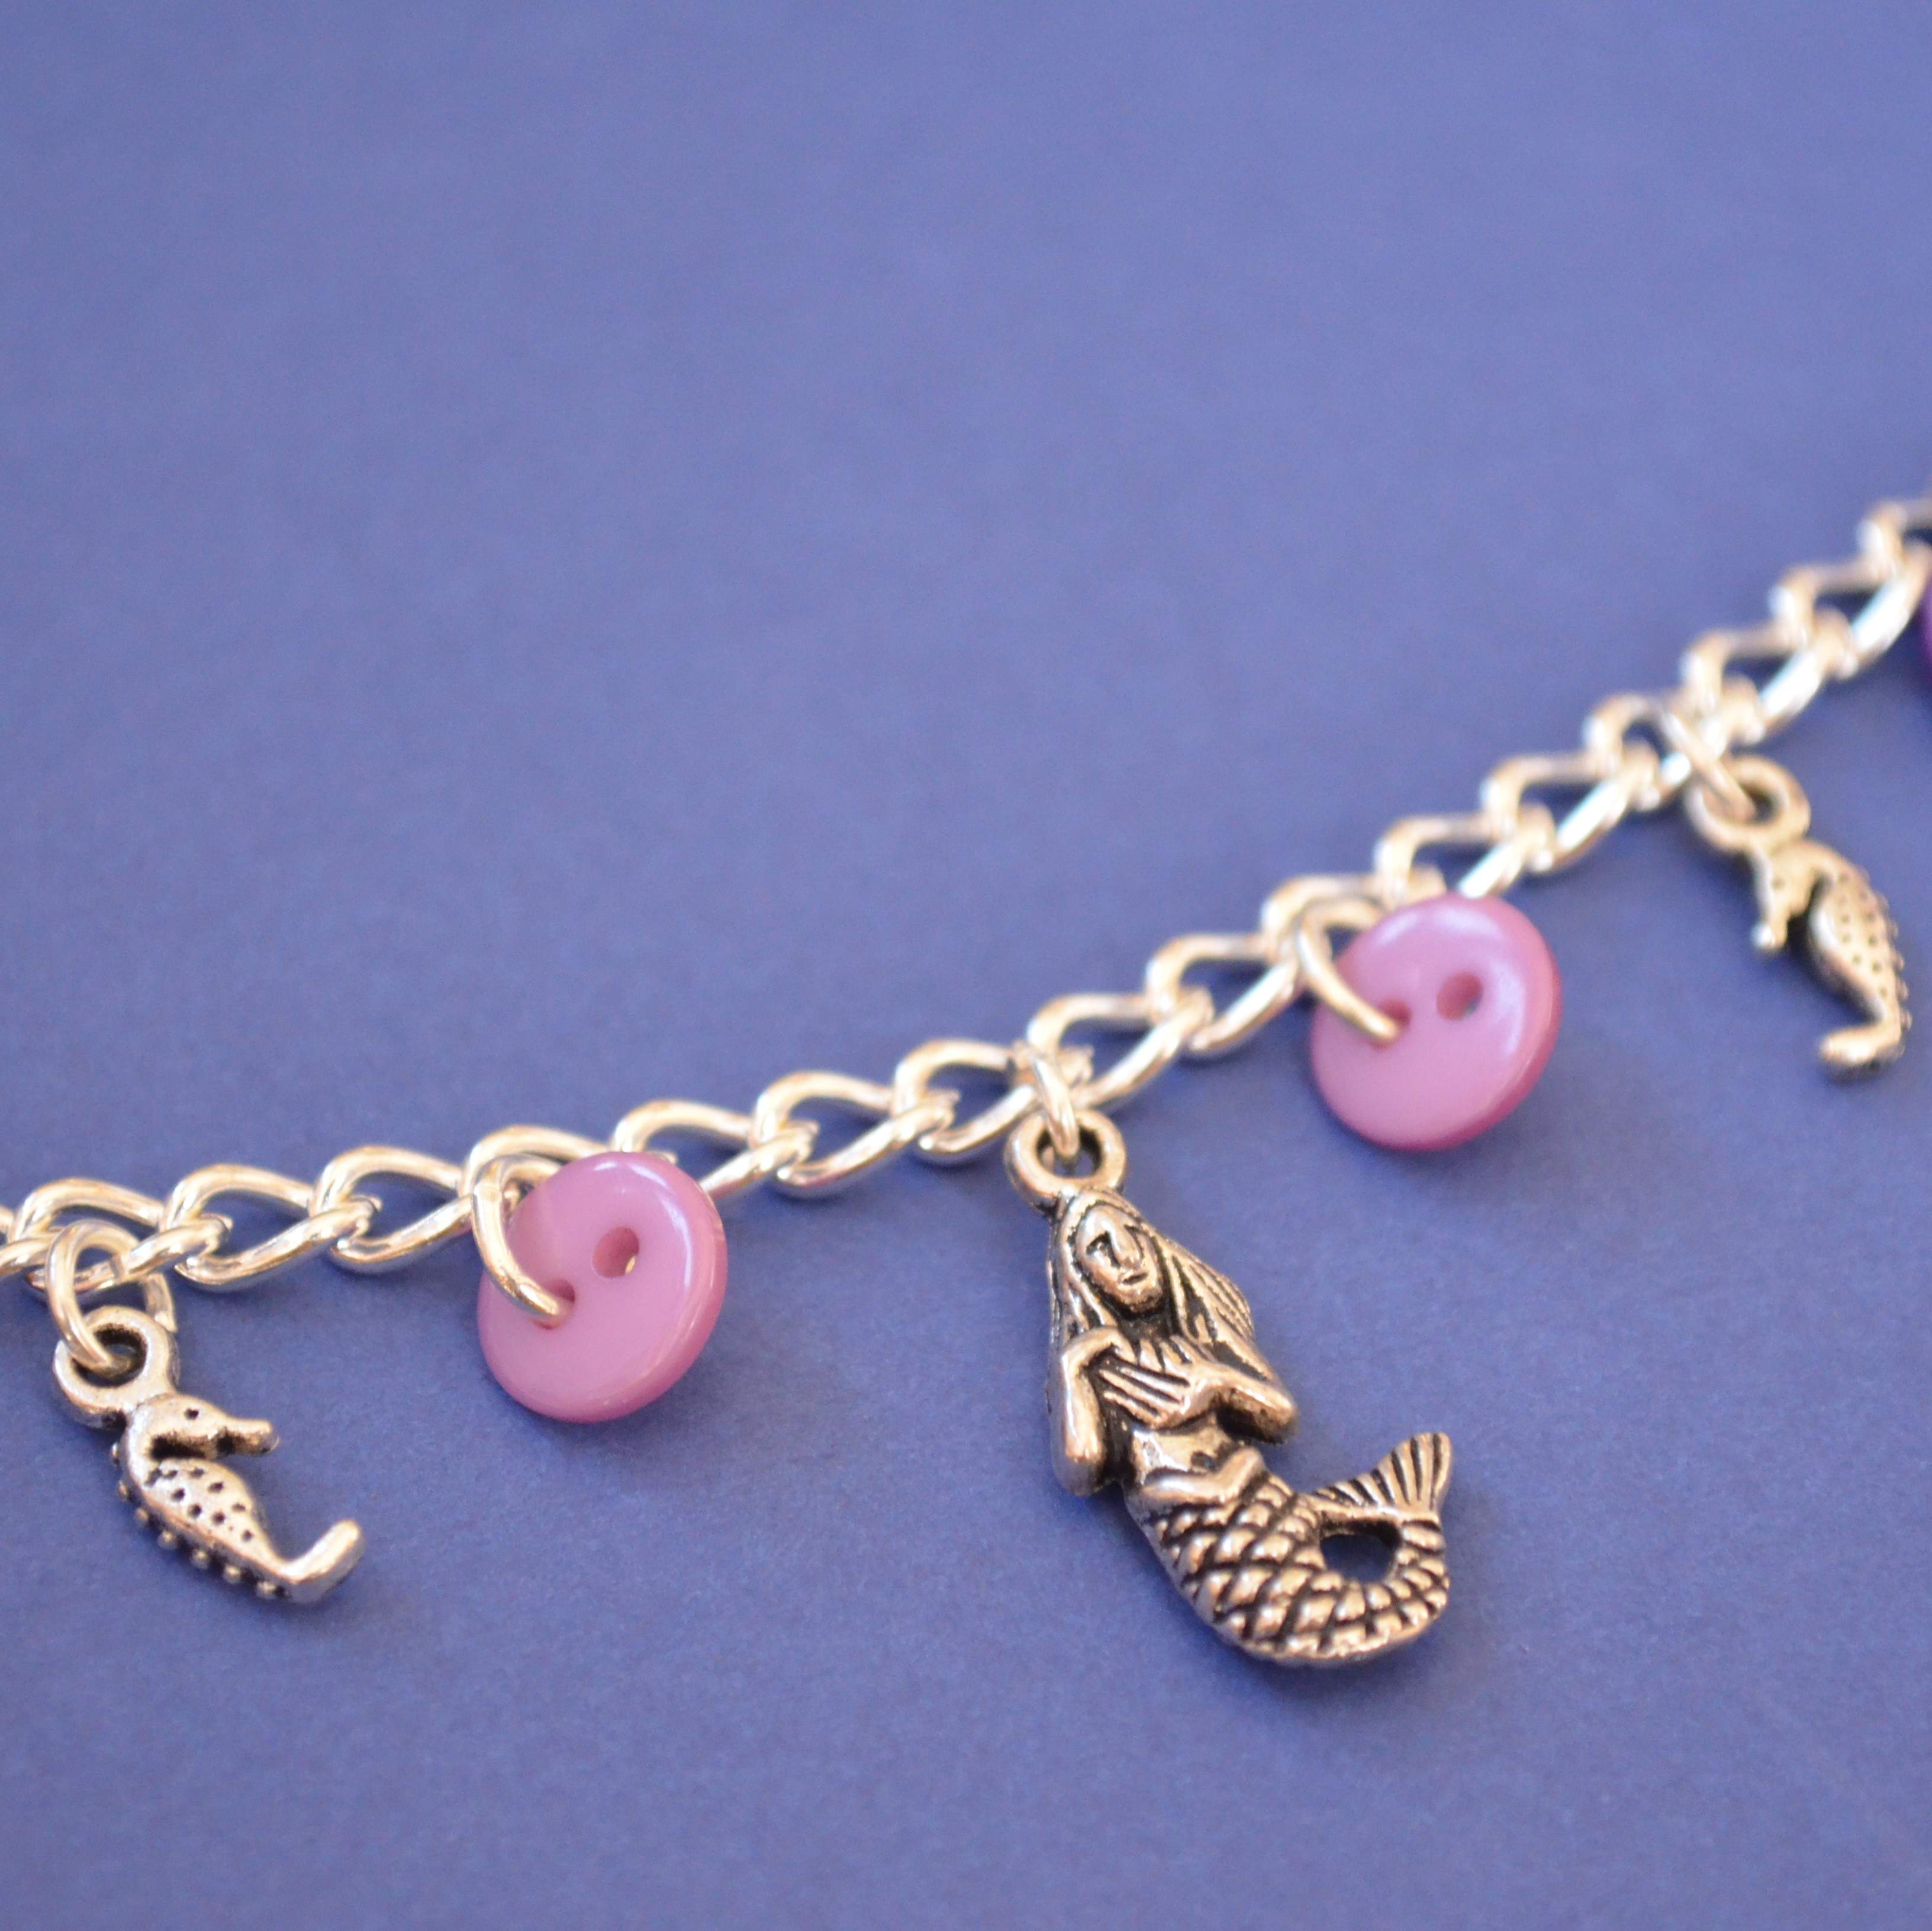 Mermaid Child’s Button Charm Bracelet